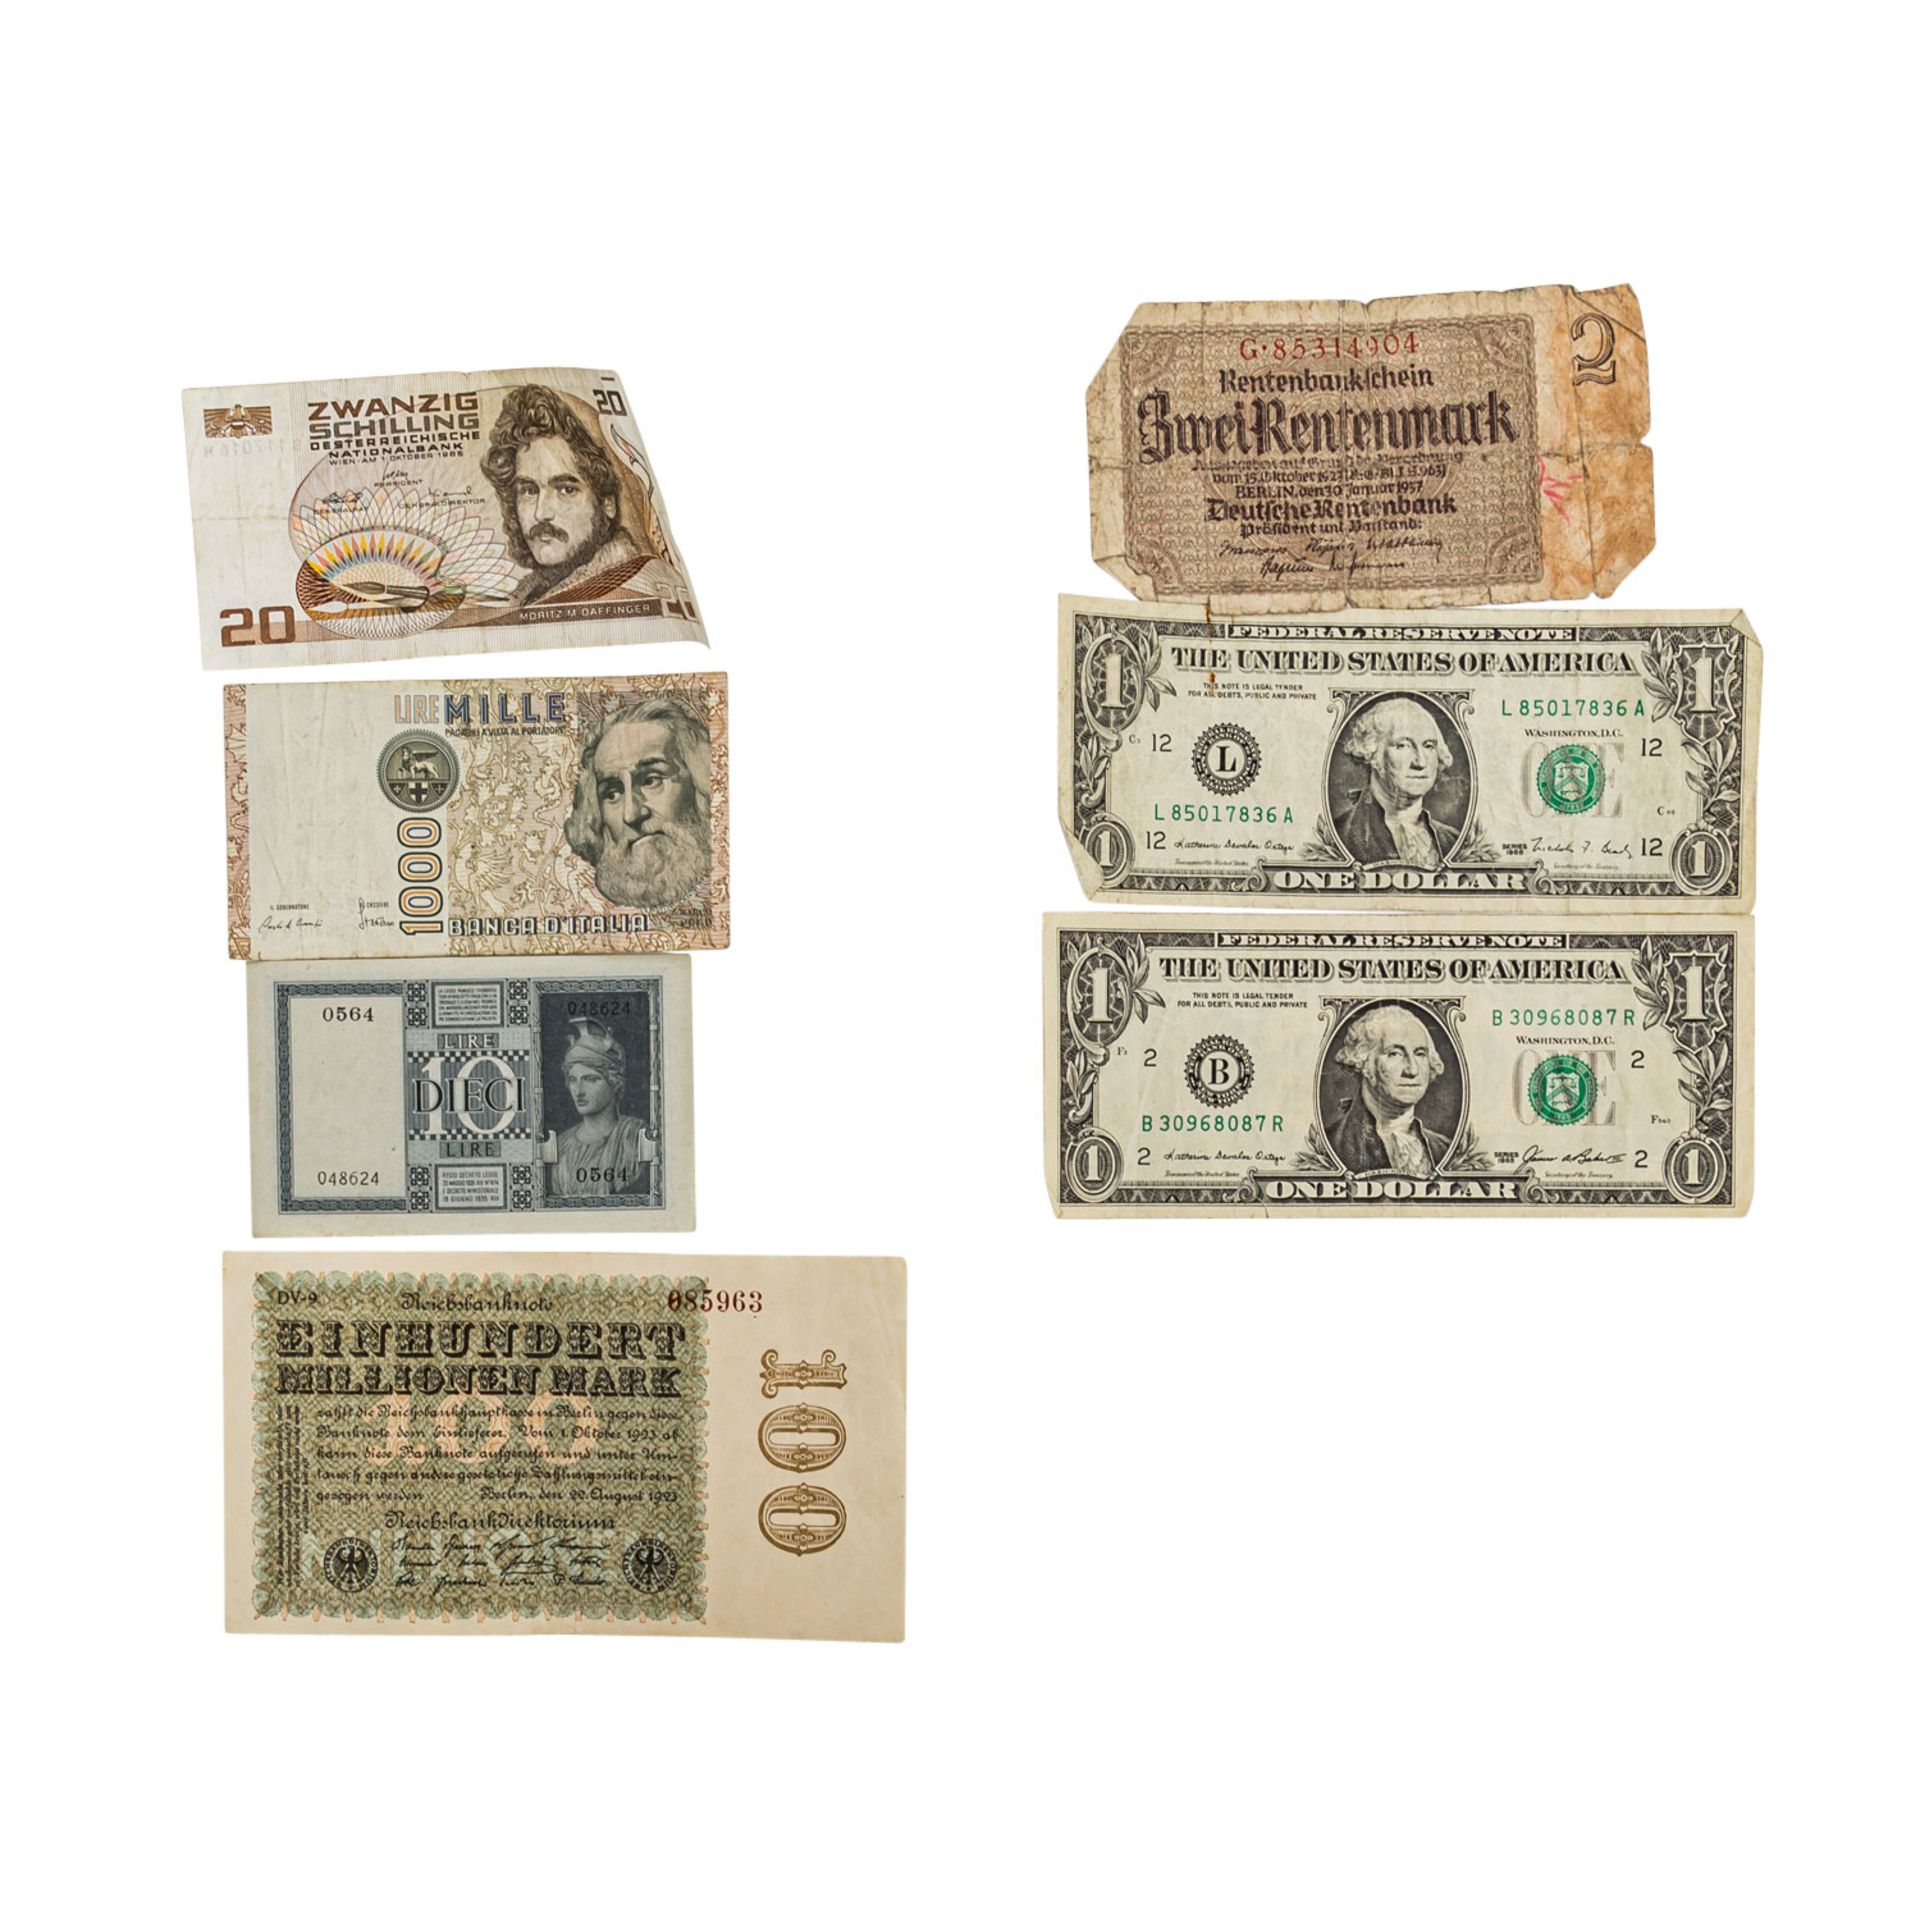 Banknoten aus aller Welt, 20.Jh. - Italien, USA, Österreich, Frankreich, Dt. Kaiserre - Image 2 of 3